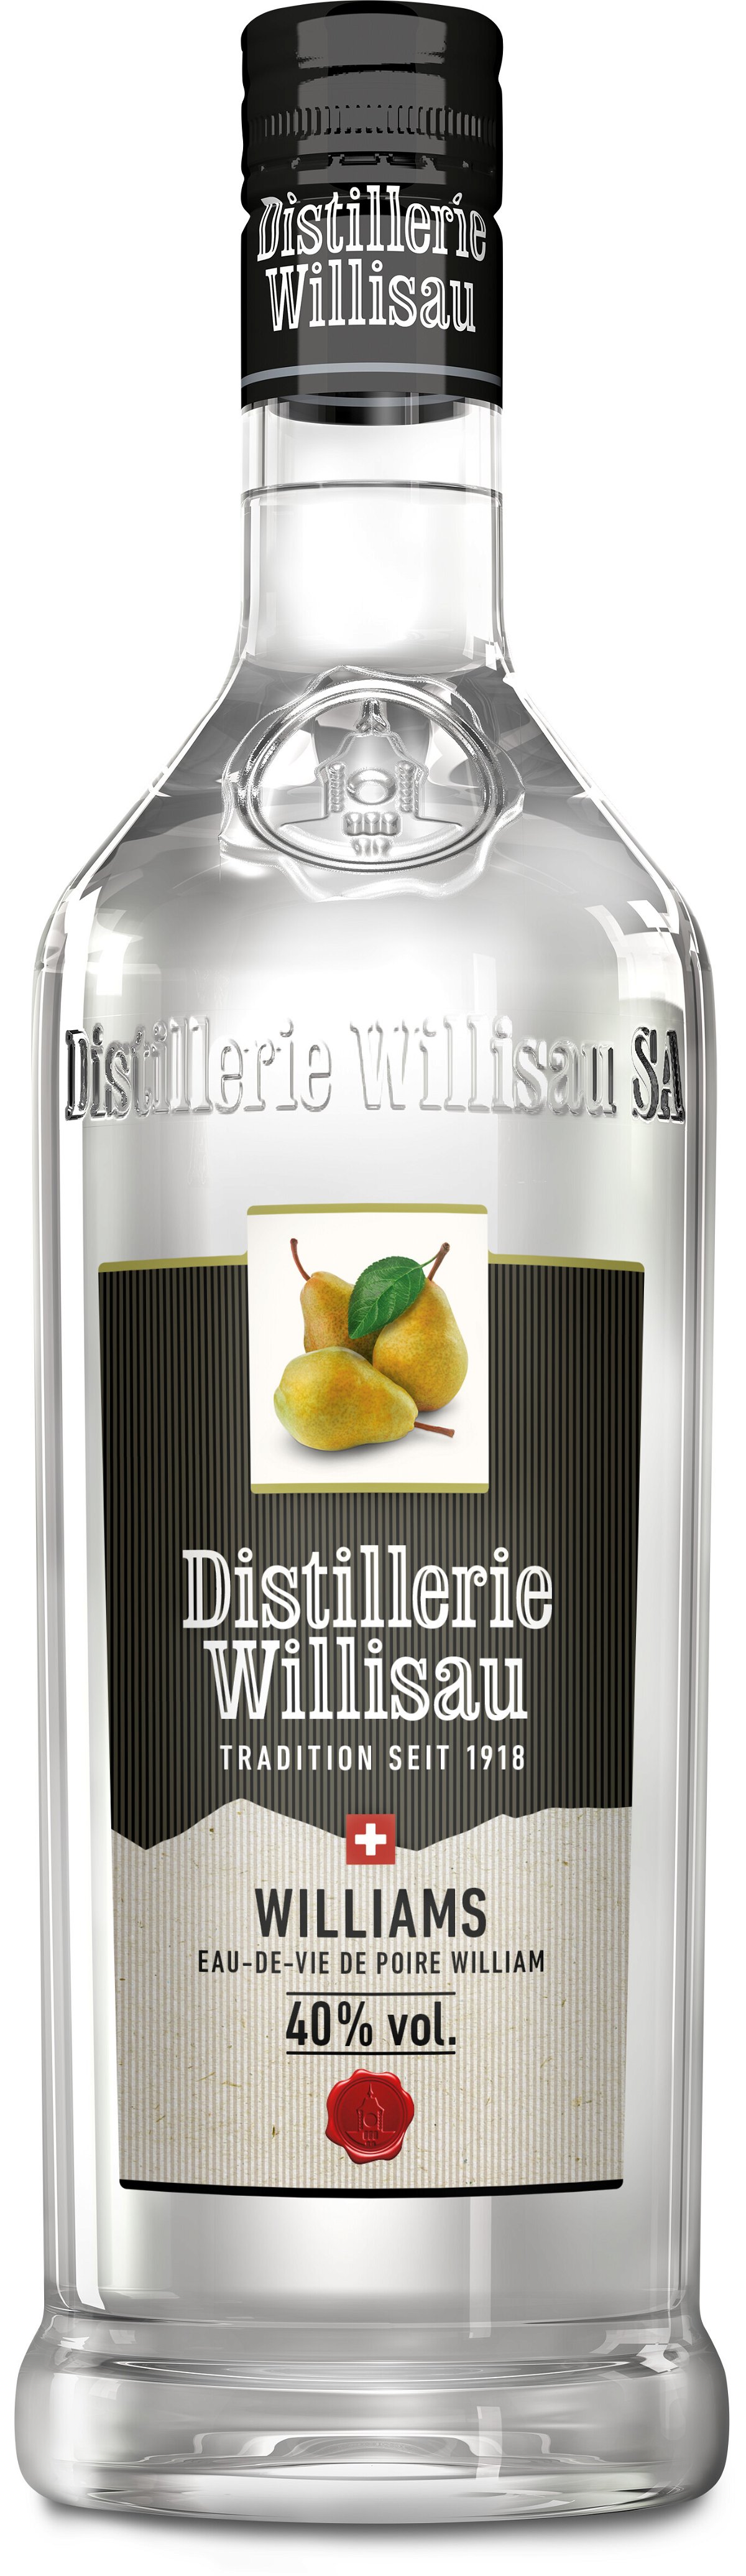 Distillerie Willisau Williams